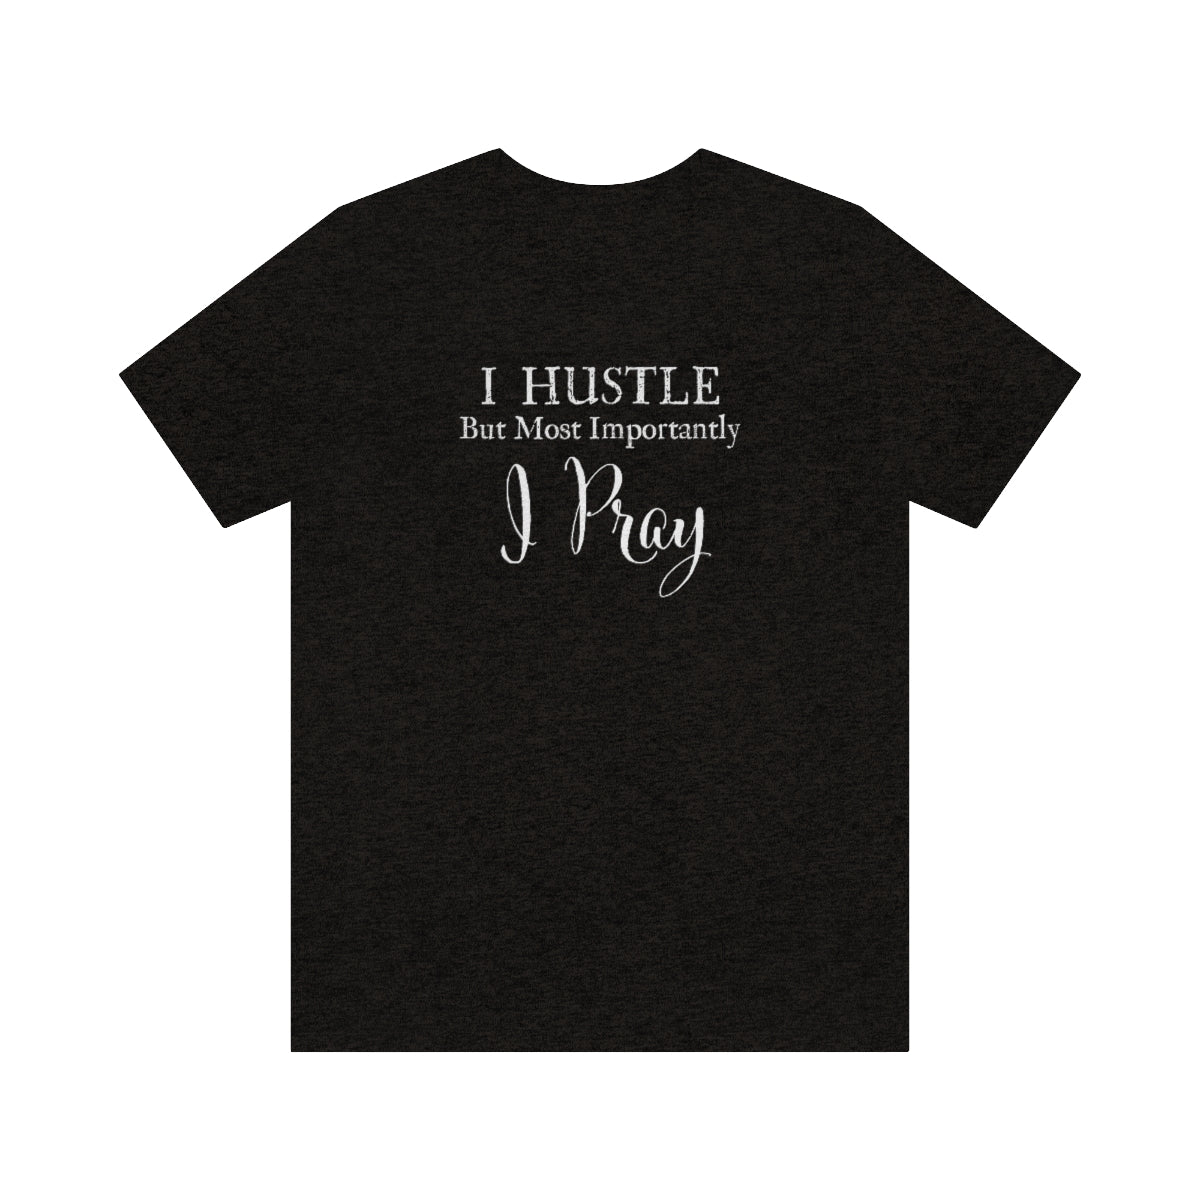 Hustle & Pray - Unisex Jersey Short Sleeve Tee